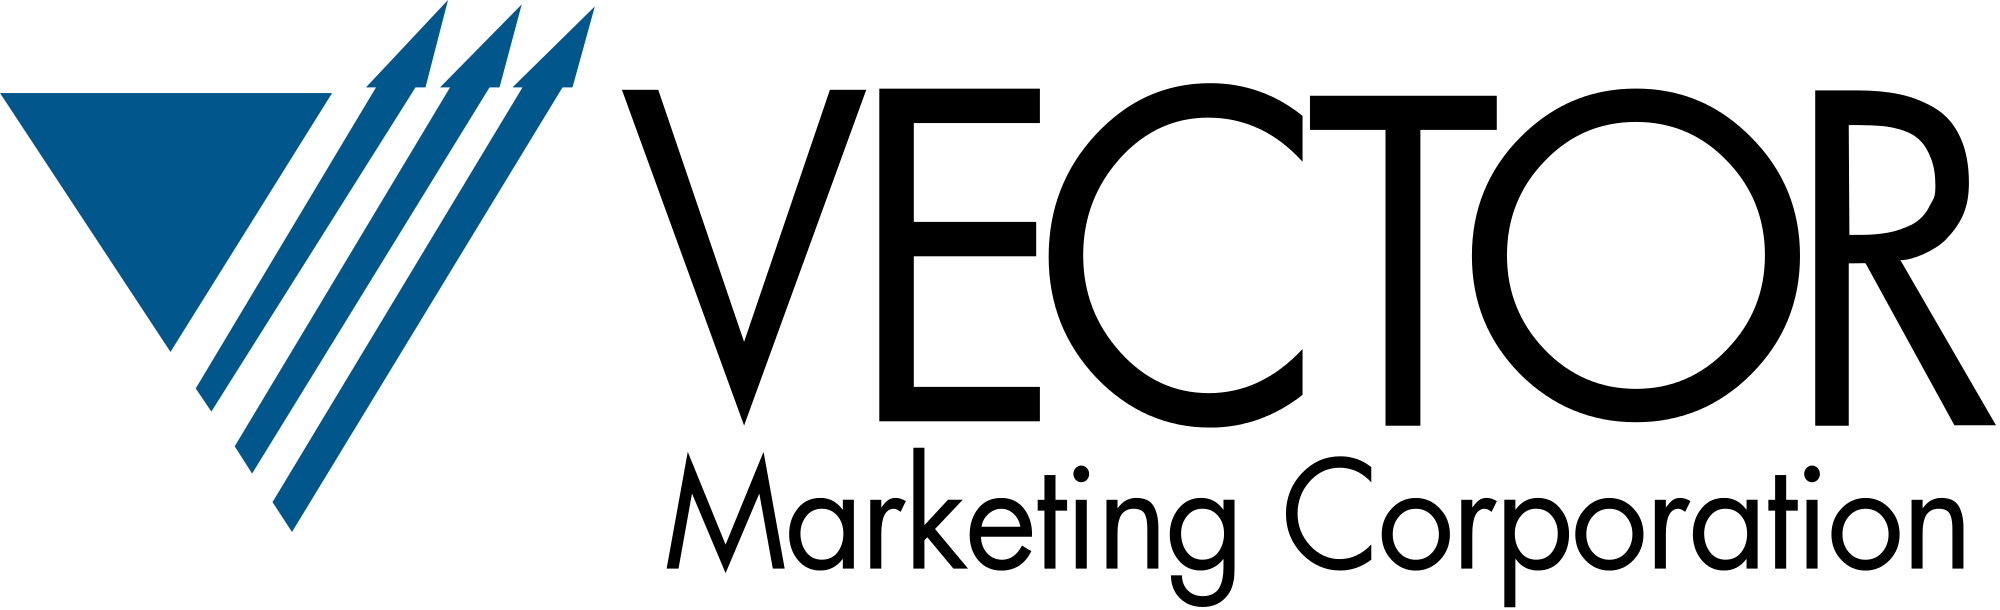 Vector Marketing Company - Vector Marketing Logo (2000x610)